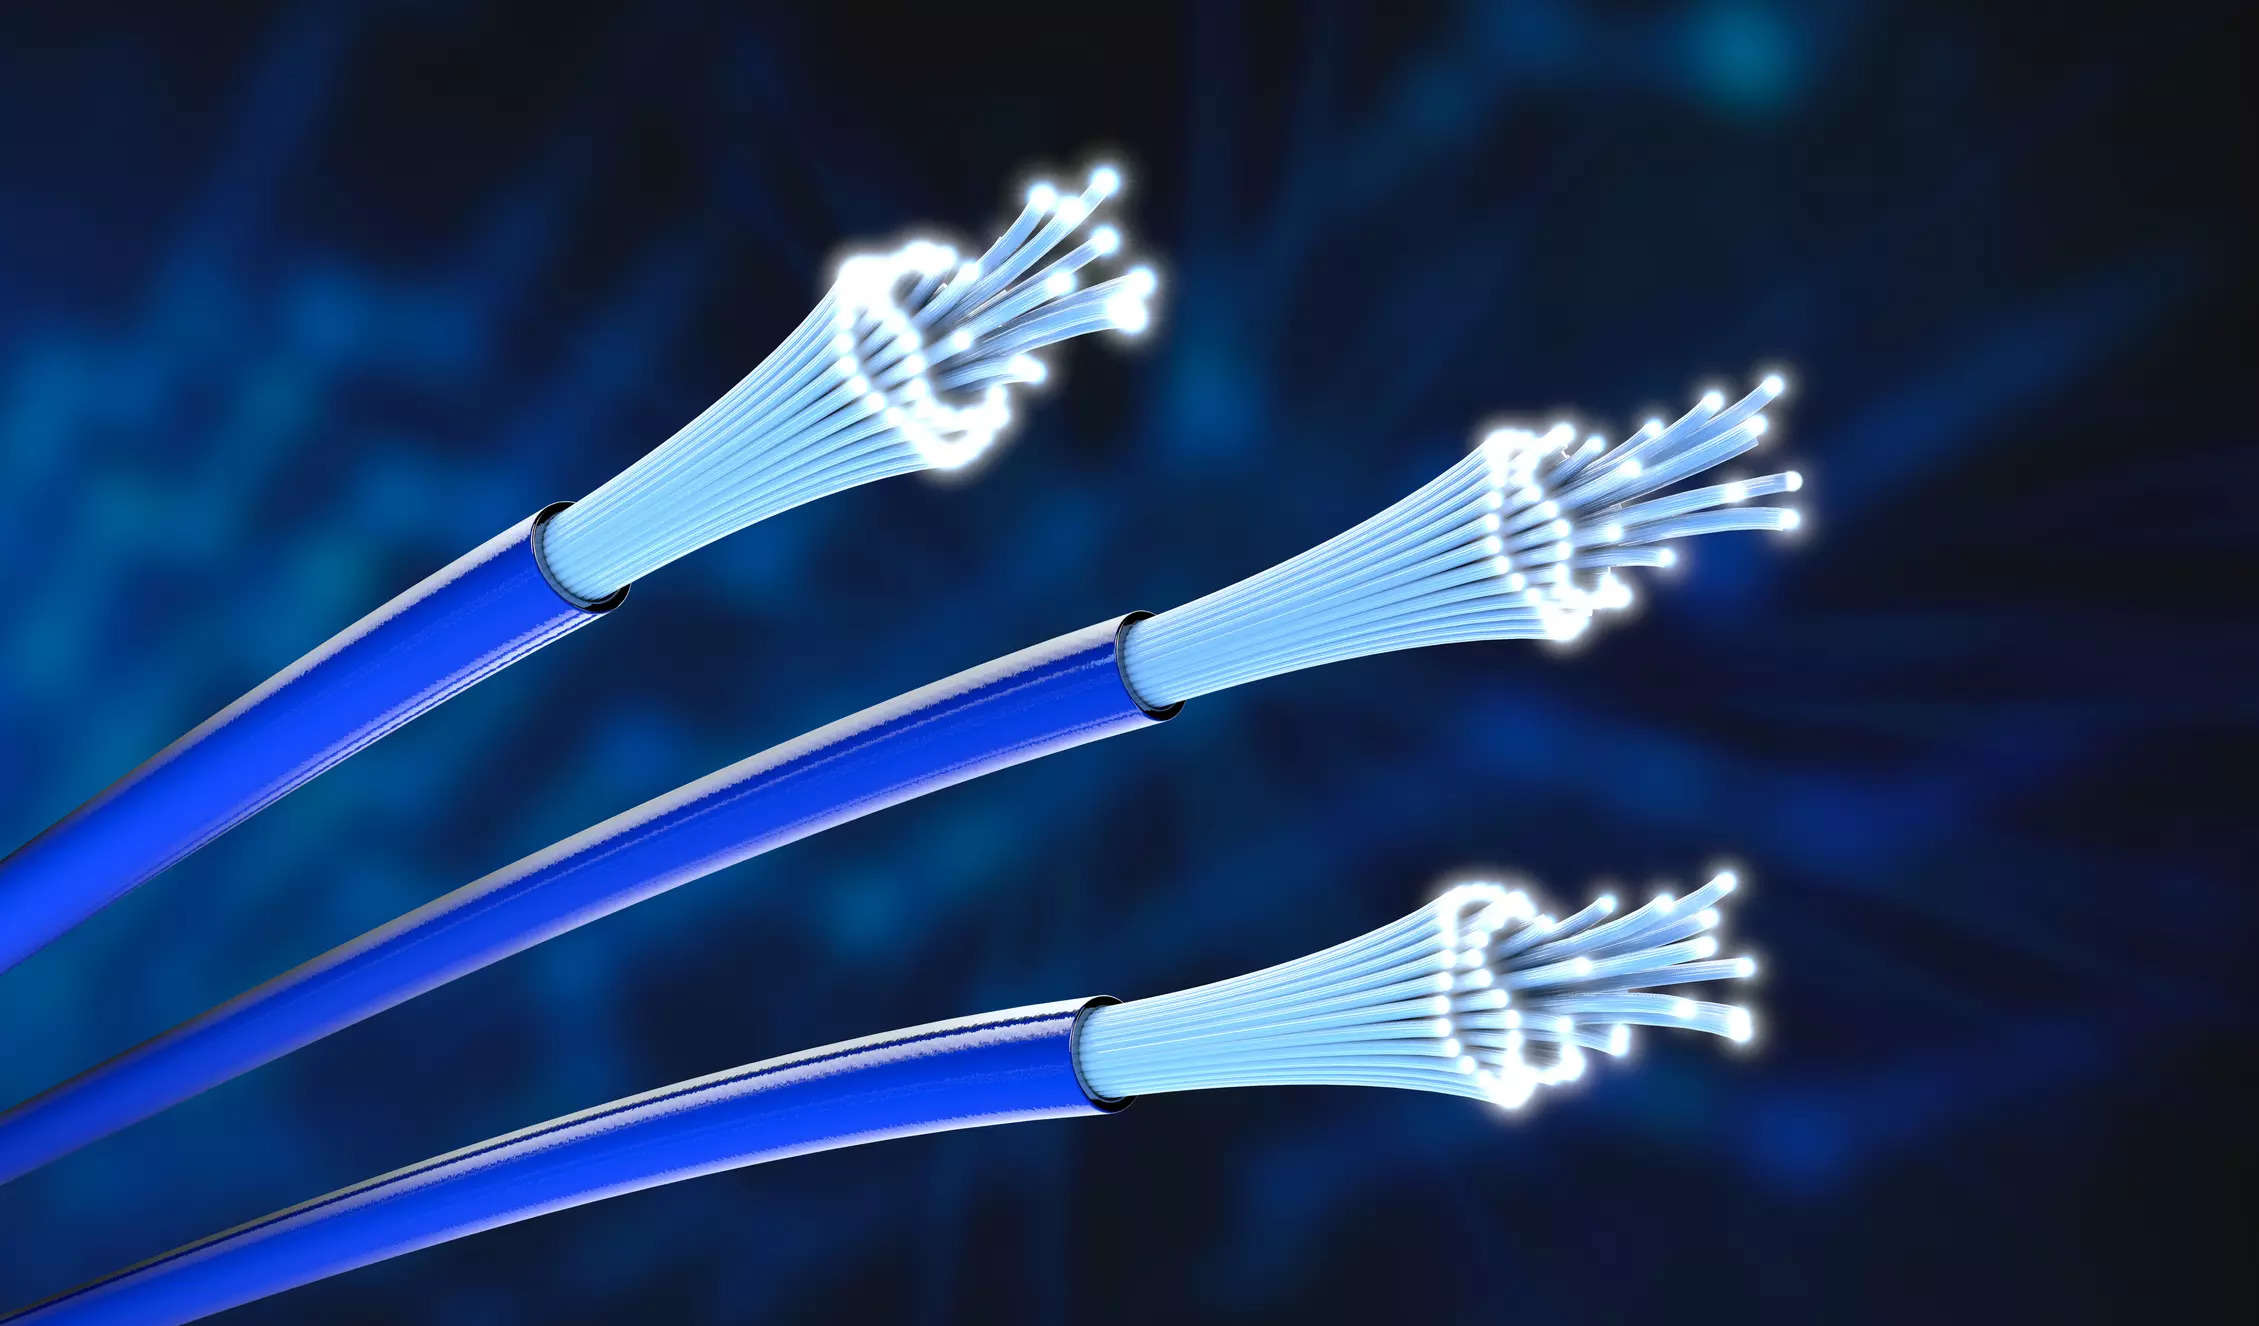 AT&T, BlackRock to form commercial fiber-optic platform